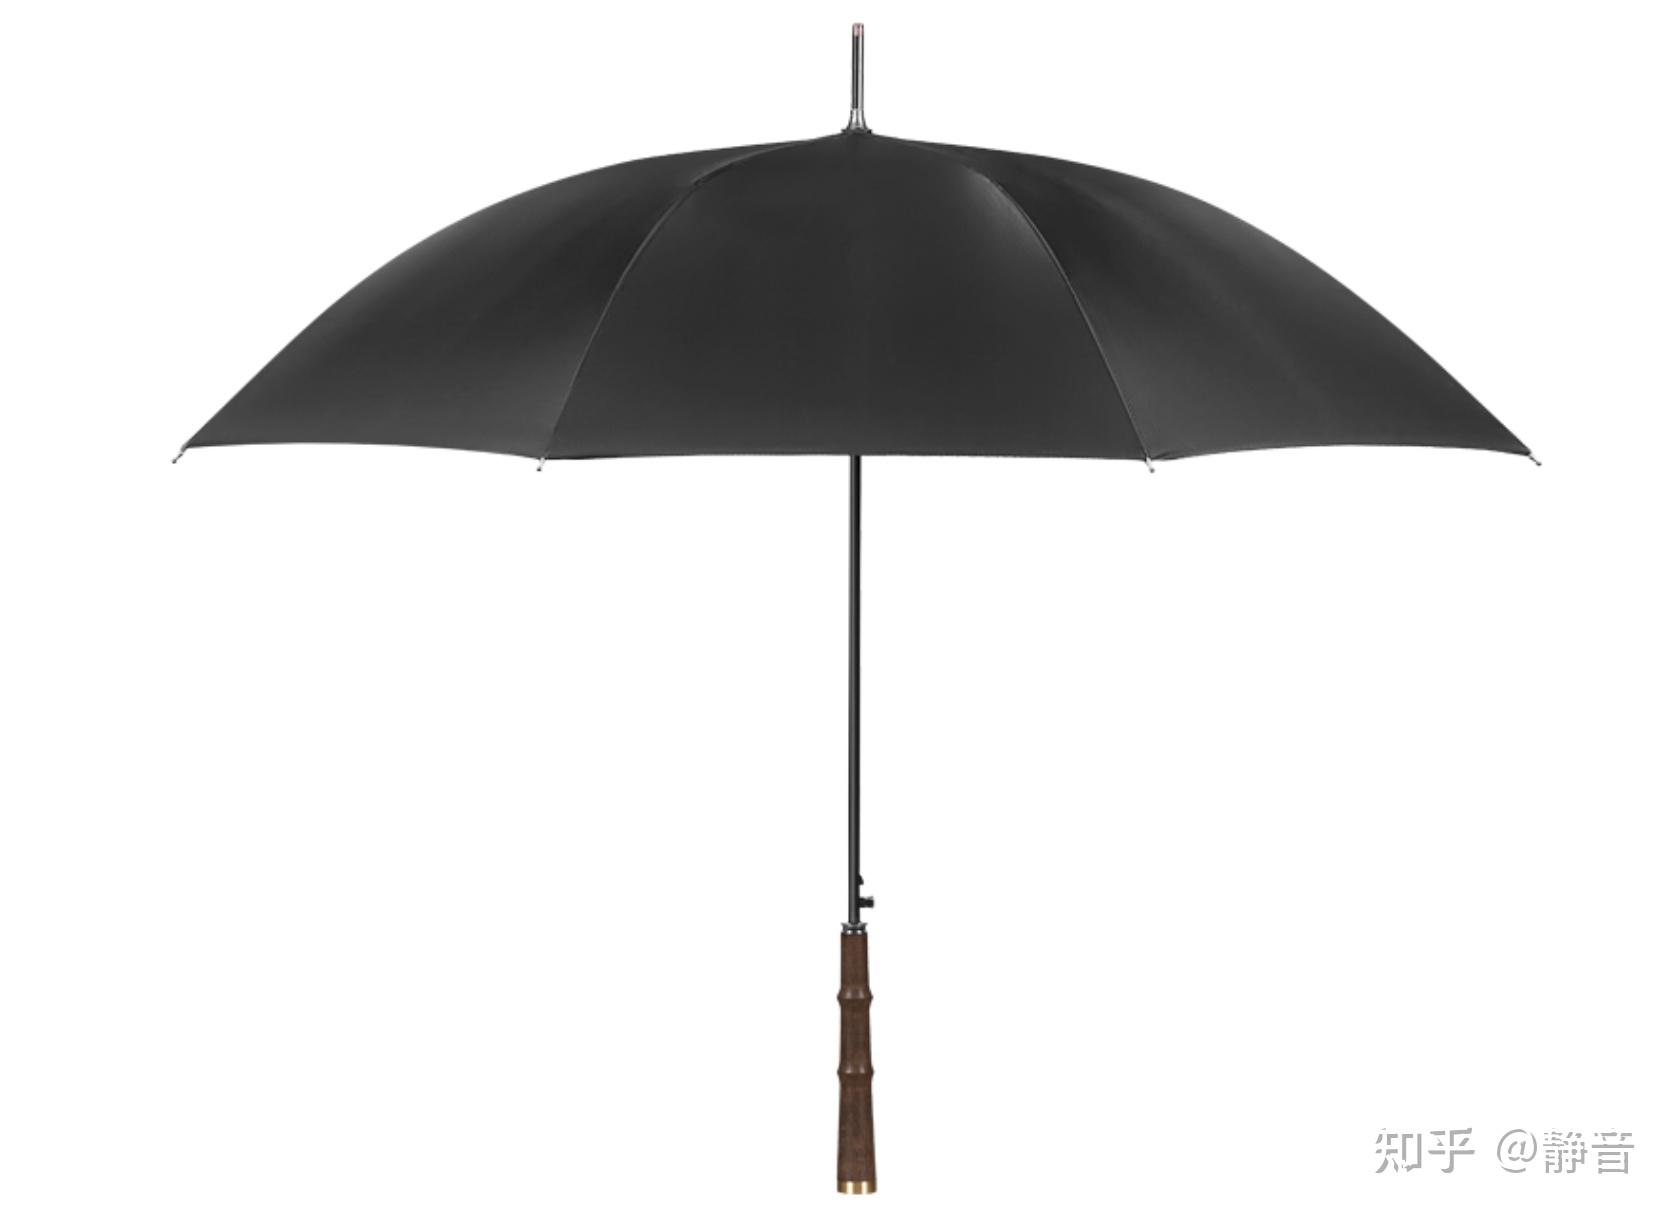 微商直供胶囊伞创意袖珍黑胶碰击布五折口袋伞定制药丸礼品雨伞-阿里巴巴